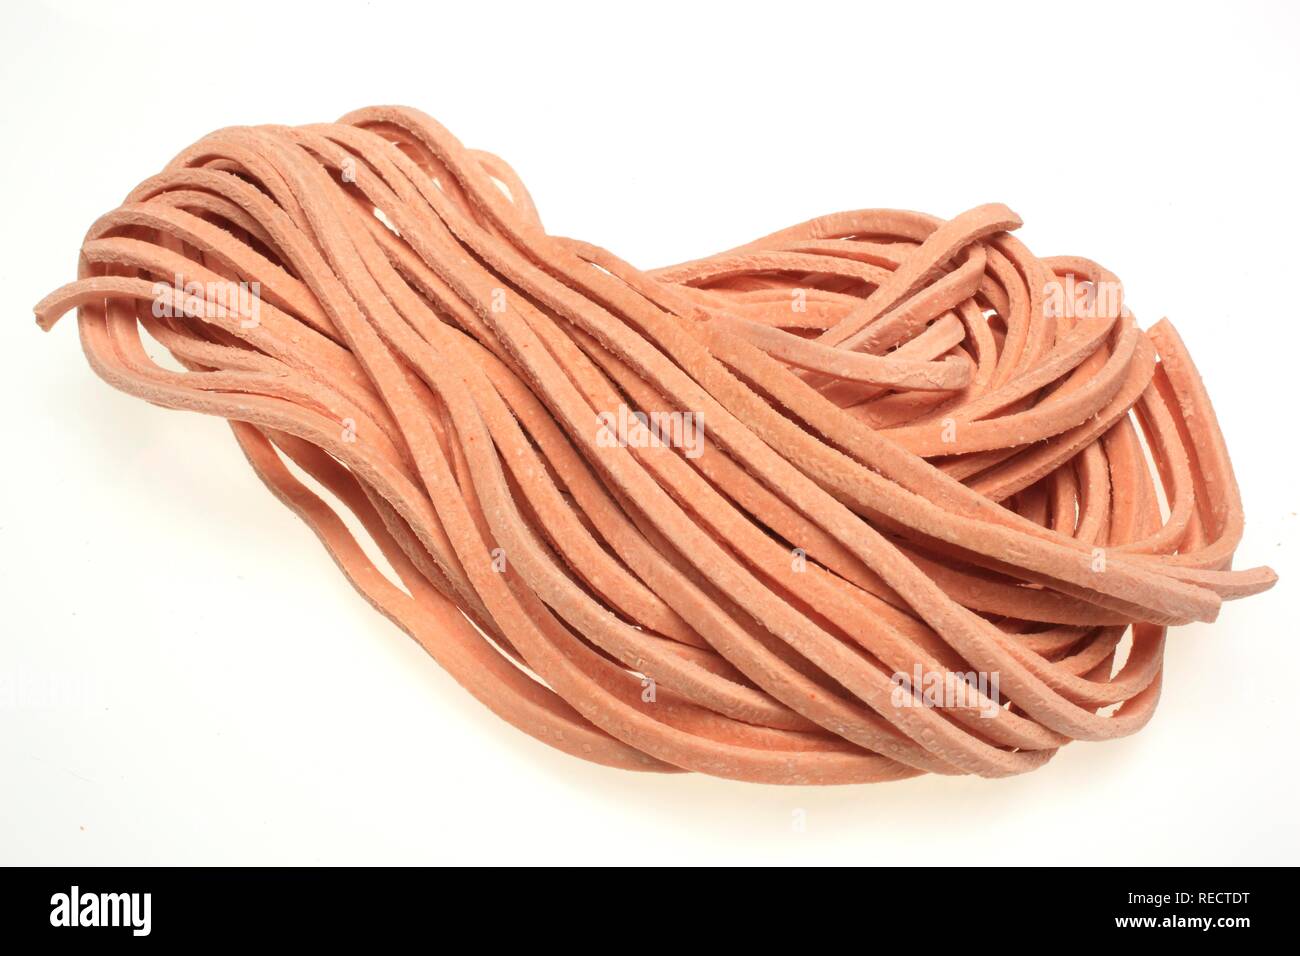 Peperoncino stringozzi, pasta di semola di grano duro conditi con Peperoncinos tinti, originariamente da Umbria, Italia Foto Stock